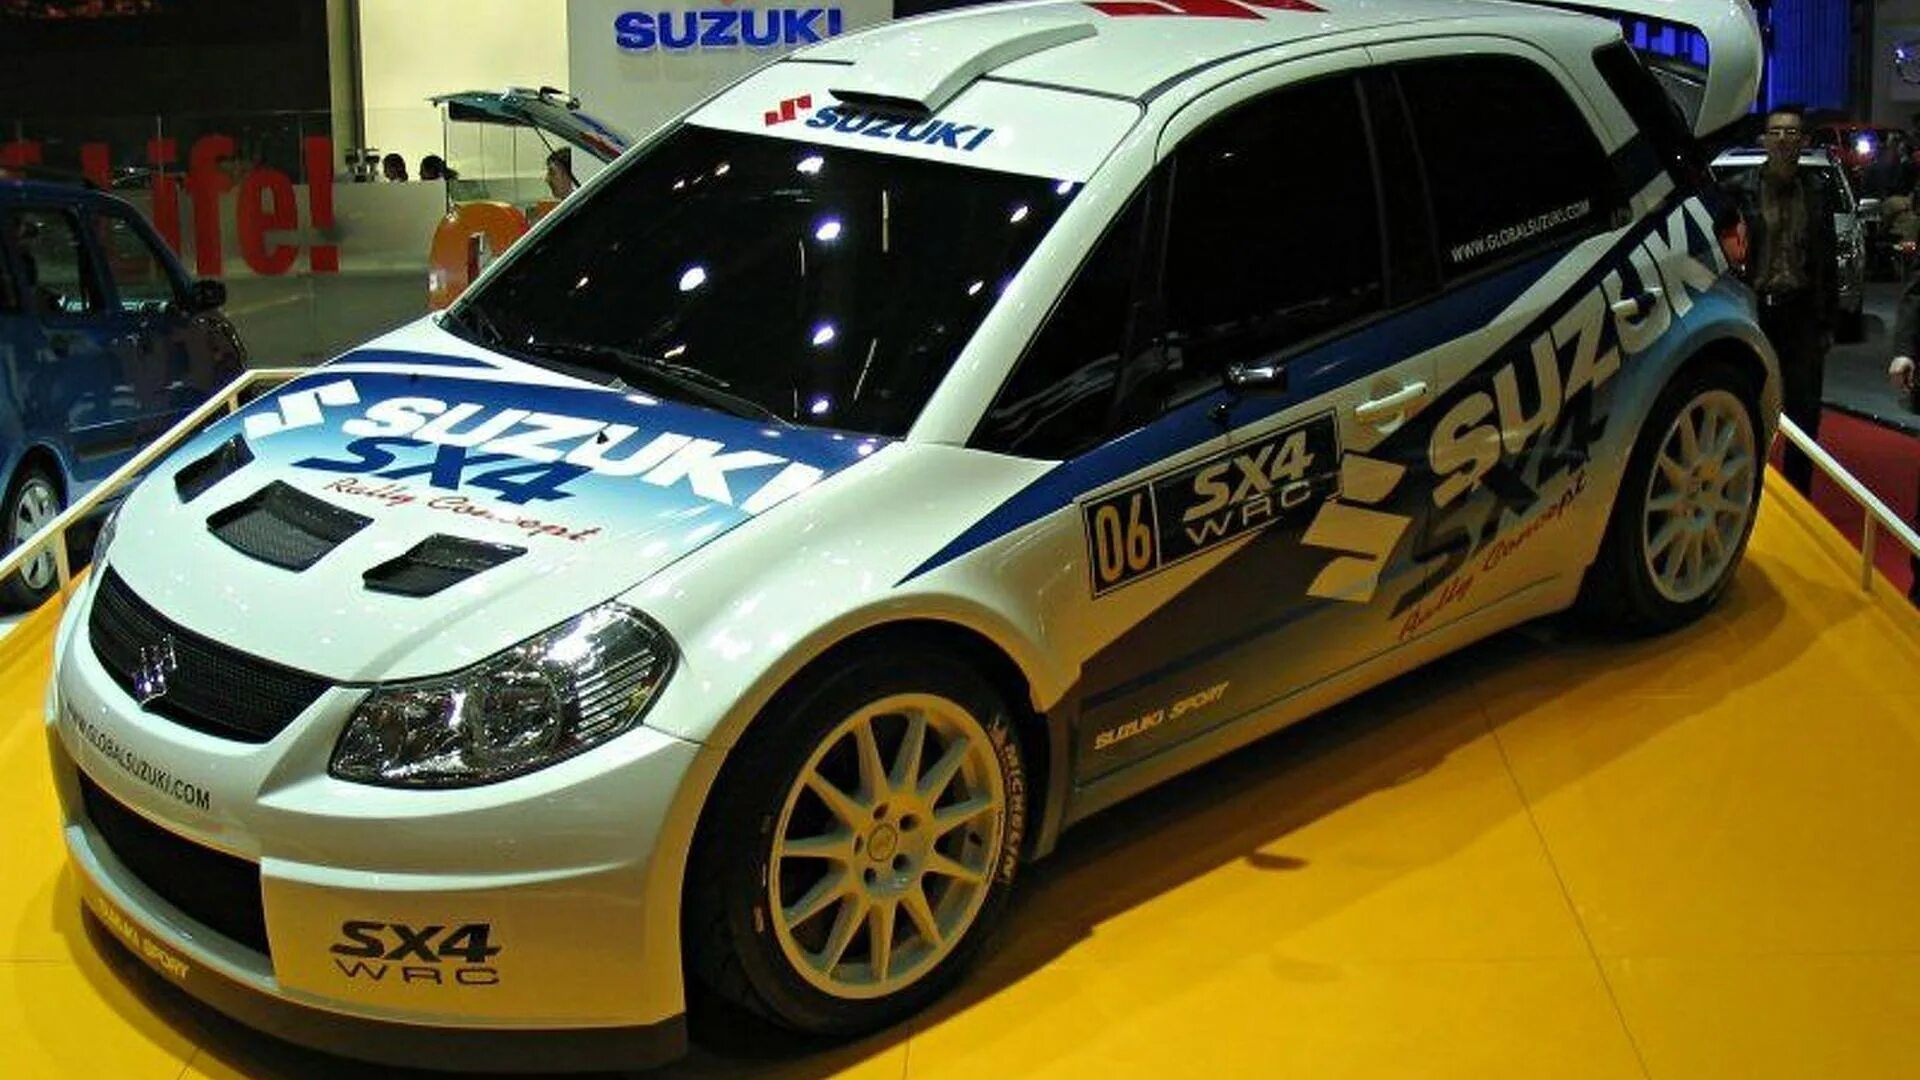 Suzuki tune. Suzuki sx4 Tuning. Suzuki sx4 раллийная. Suzuki sx4 спорт. Suzuki sx4 WRC.